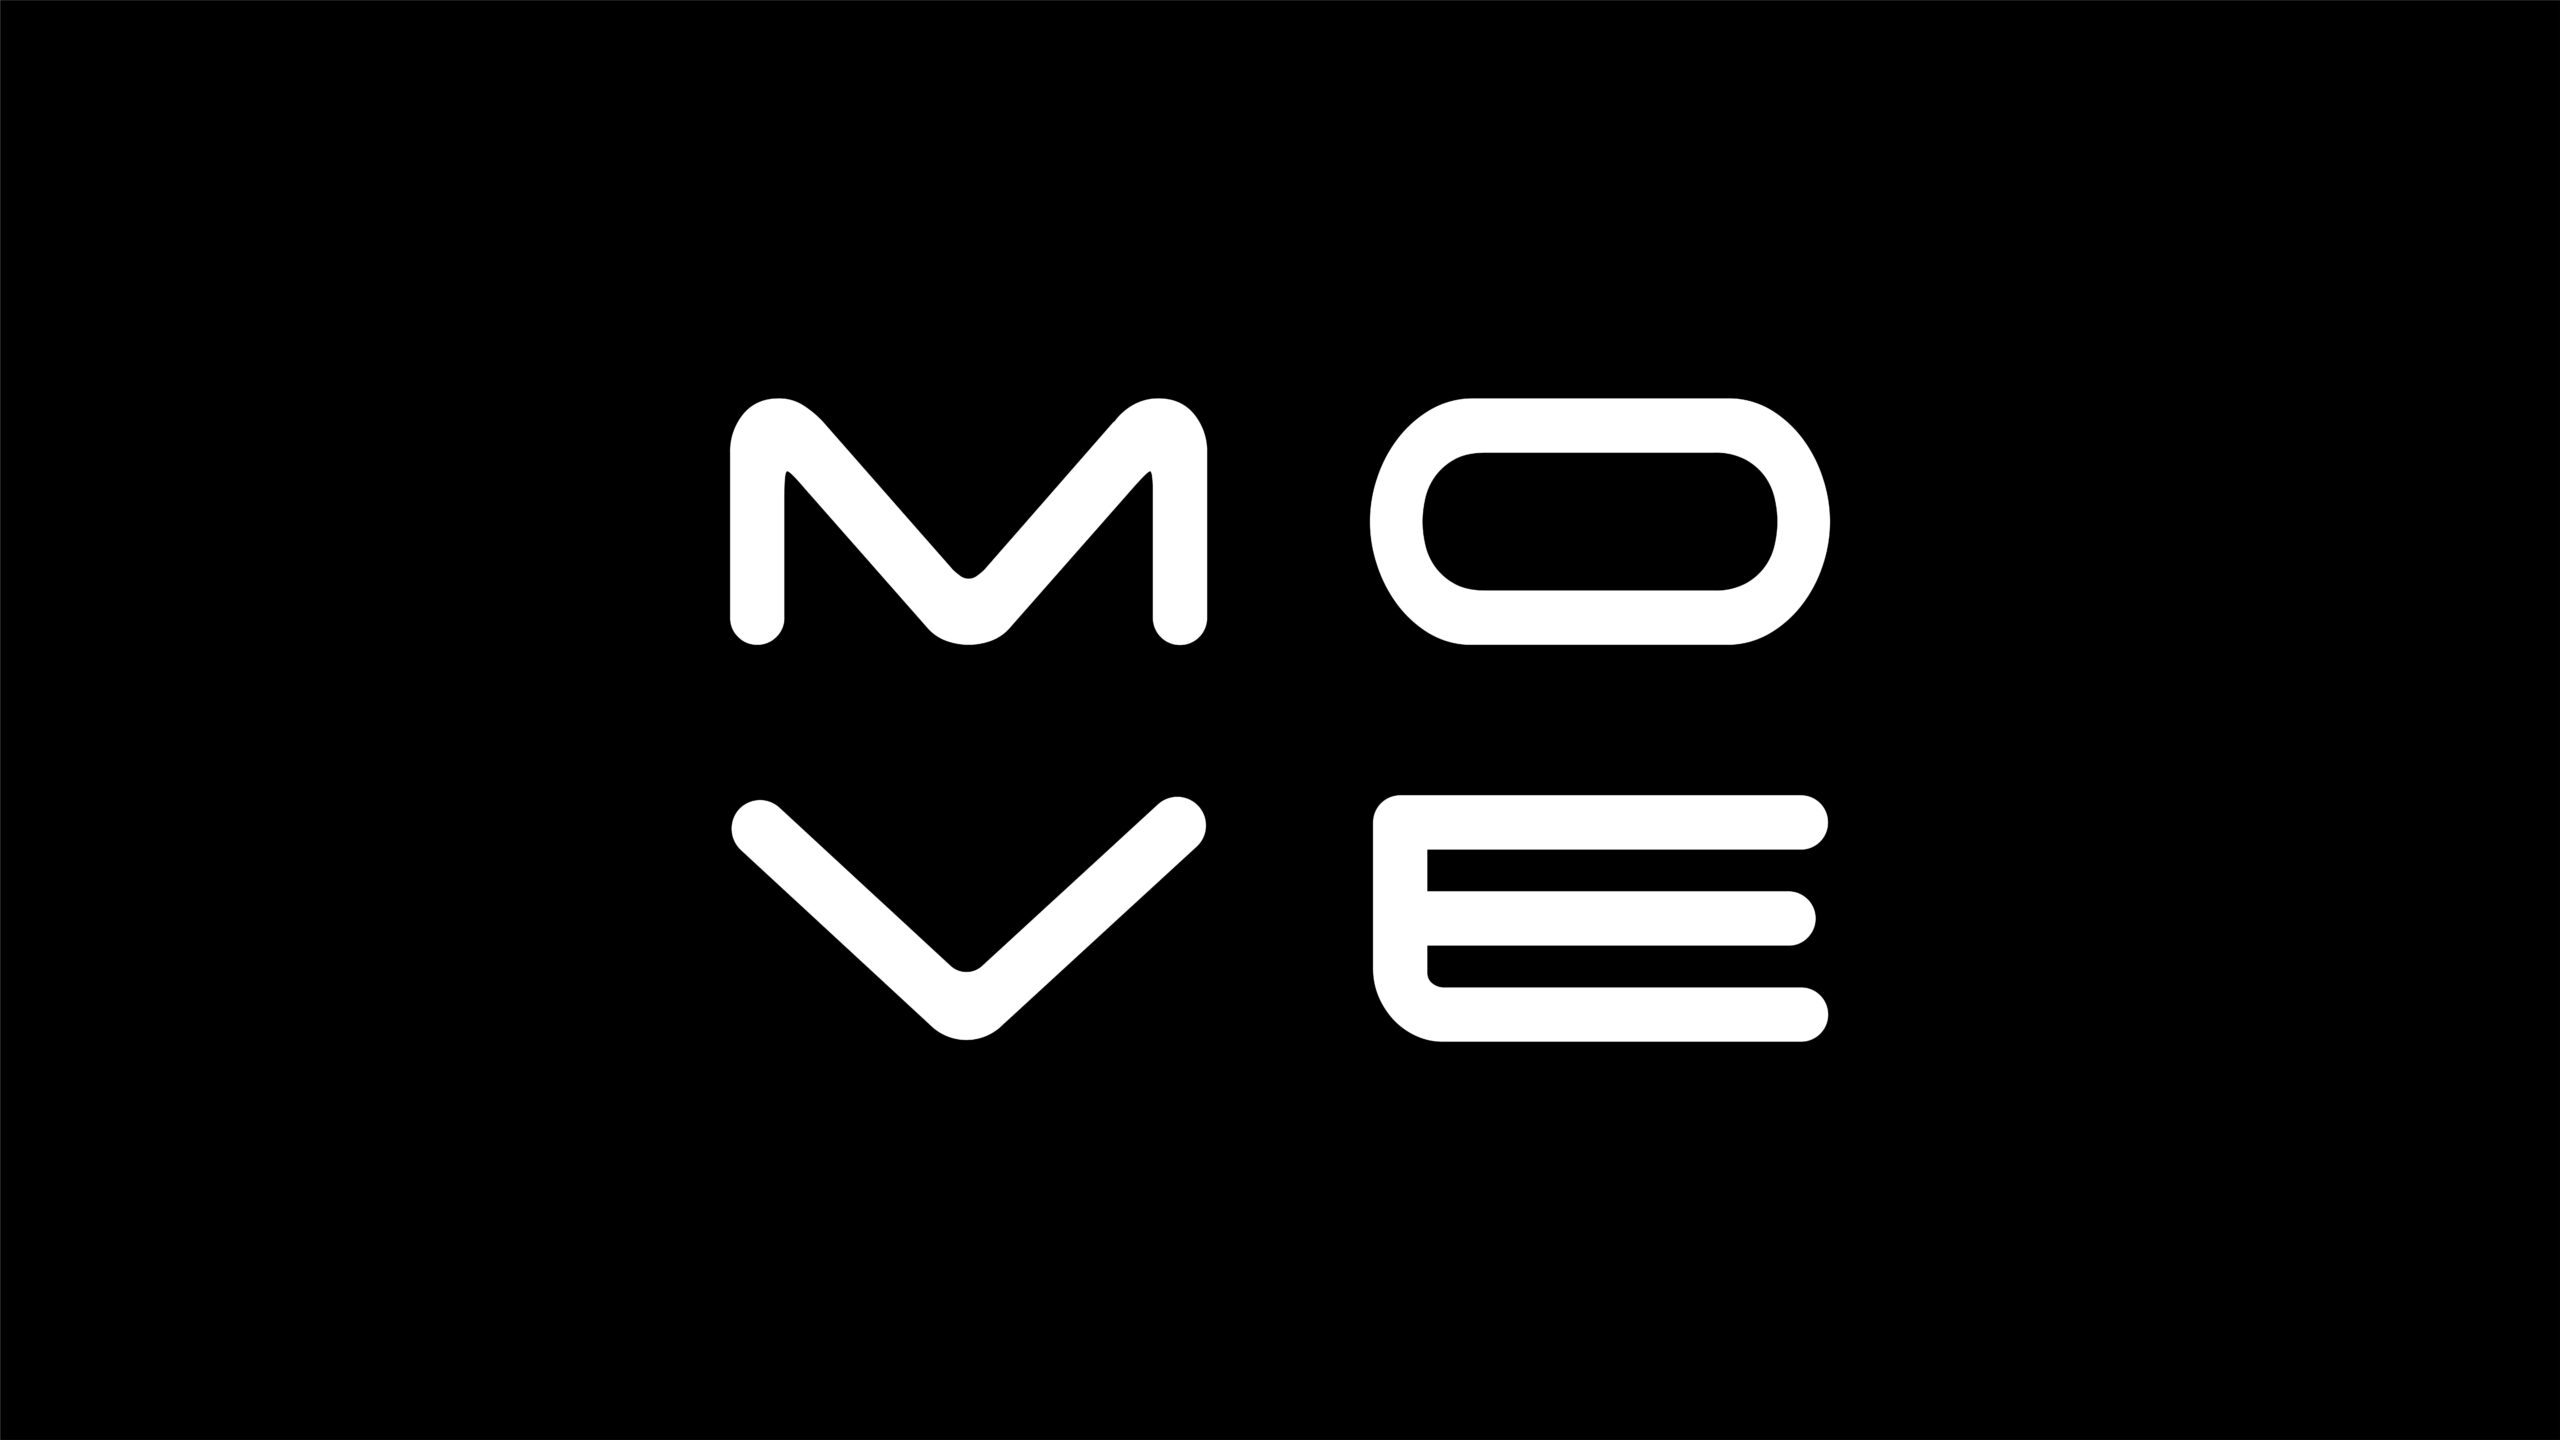 3Dモーションキャプチャーアプリ「Move AI」がシード資金1,000万ドルを調達